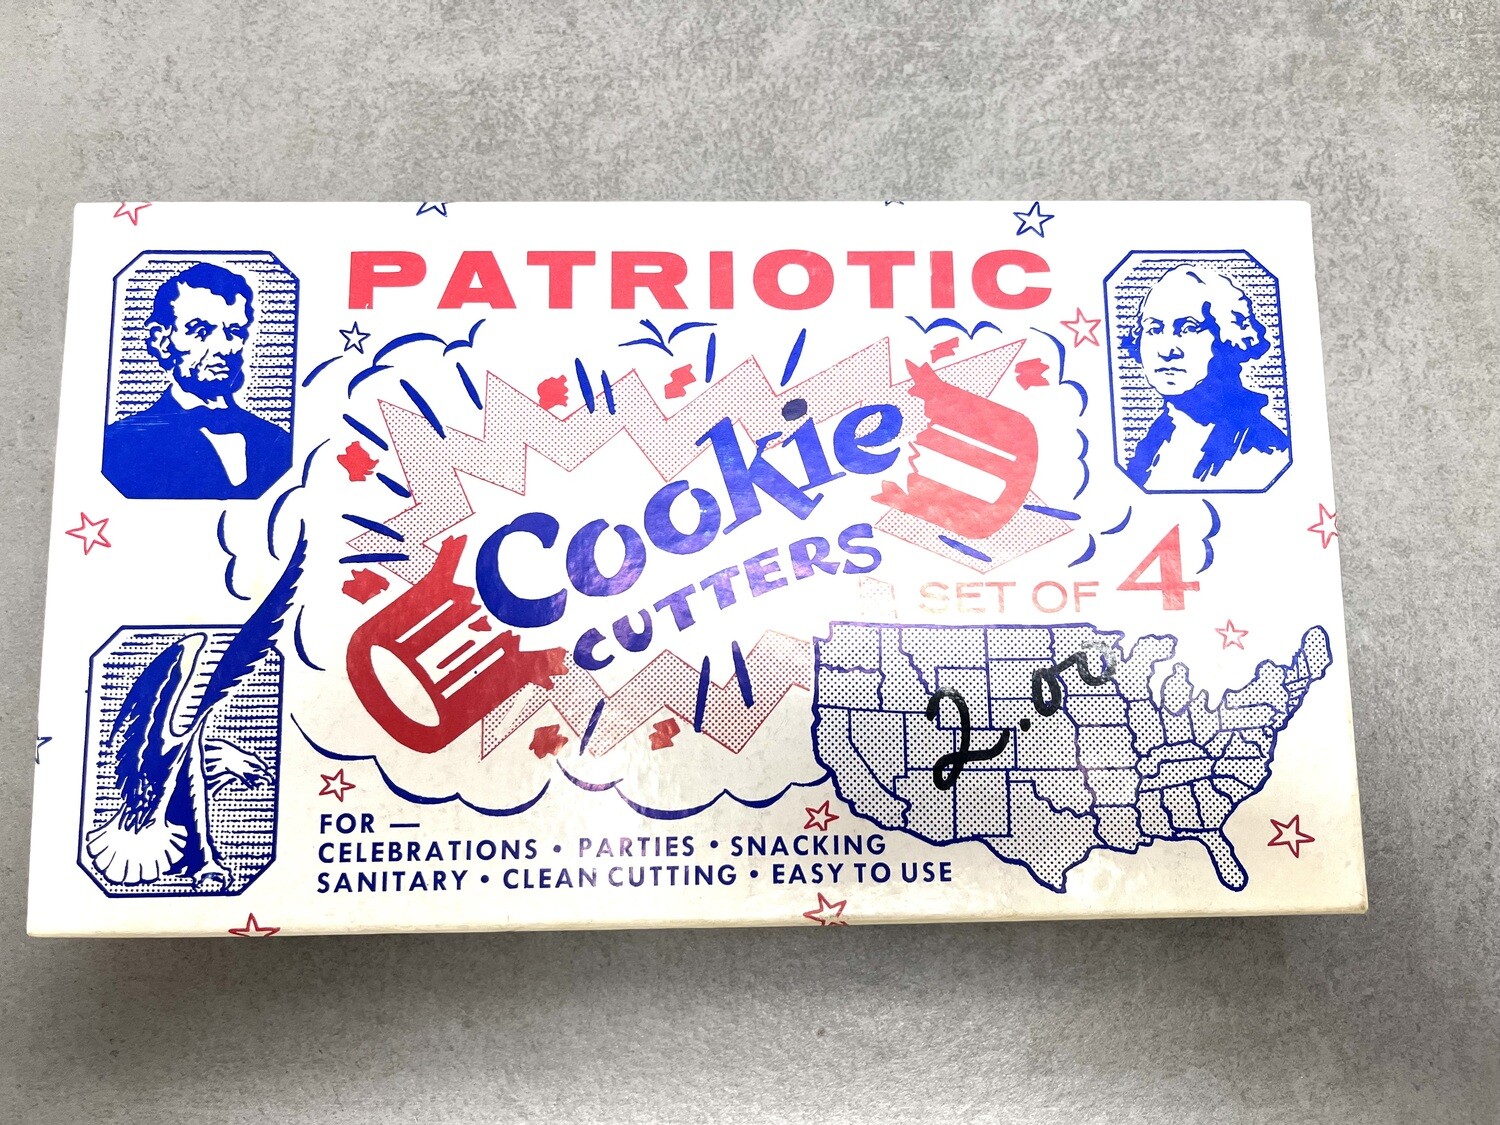 Patriotic Cookie Cutters